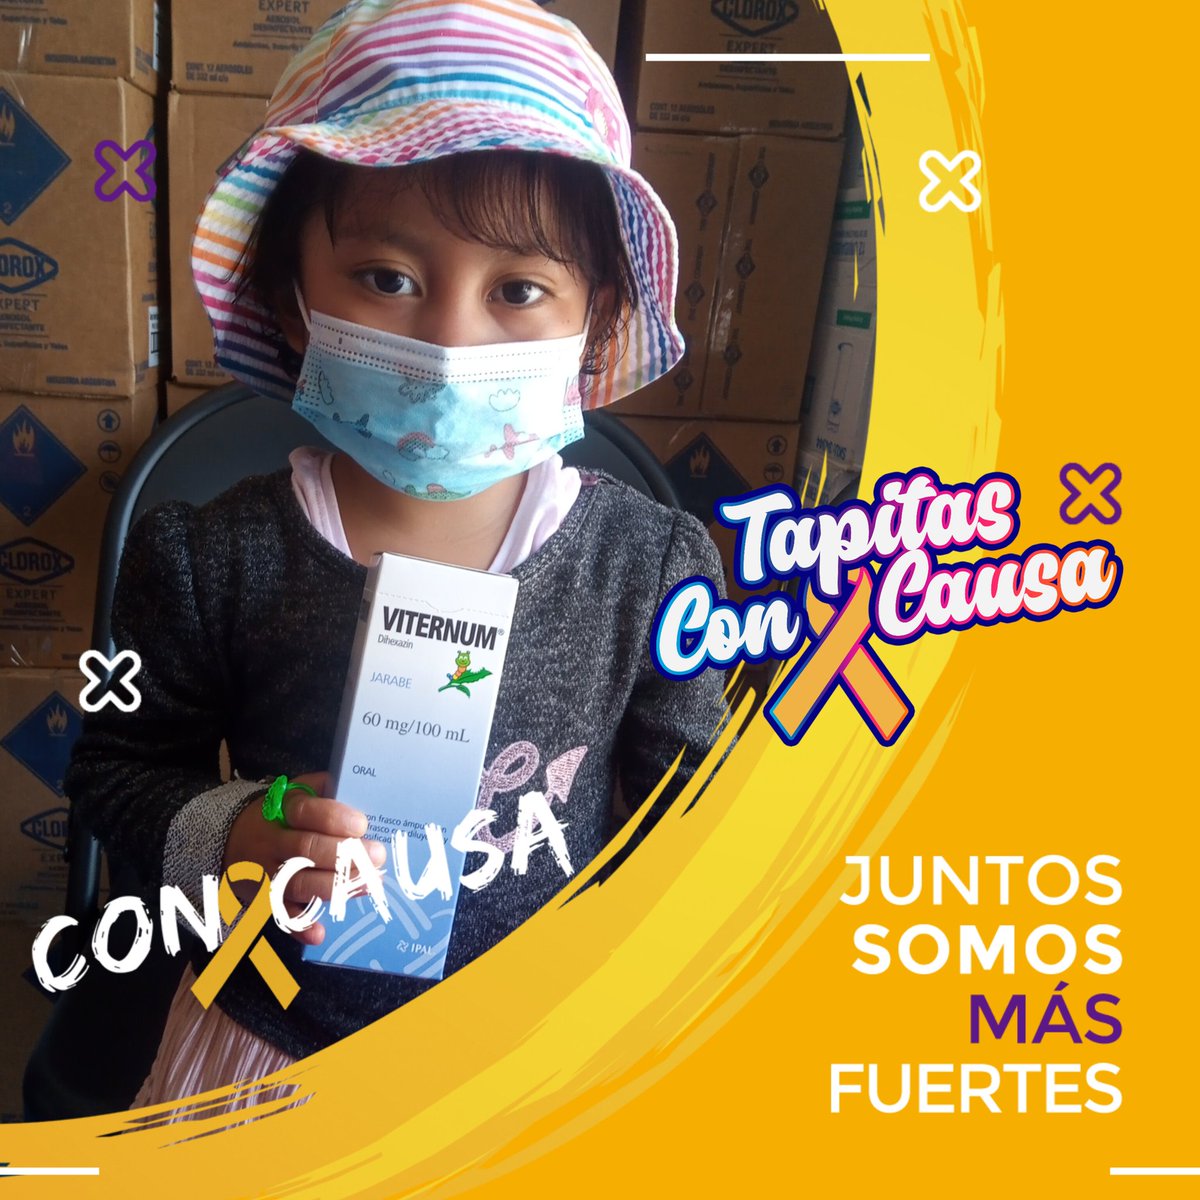 Aproximadamente 150 kilos de tapitas fueron necesarios para que hoy la pequeña Emma tenga su medicamento, gracias a tí porque esto es posible con cada tapita que donas 🎗️❤️ #Tapitas #ConCausa #CancerInfantil